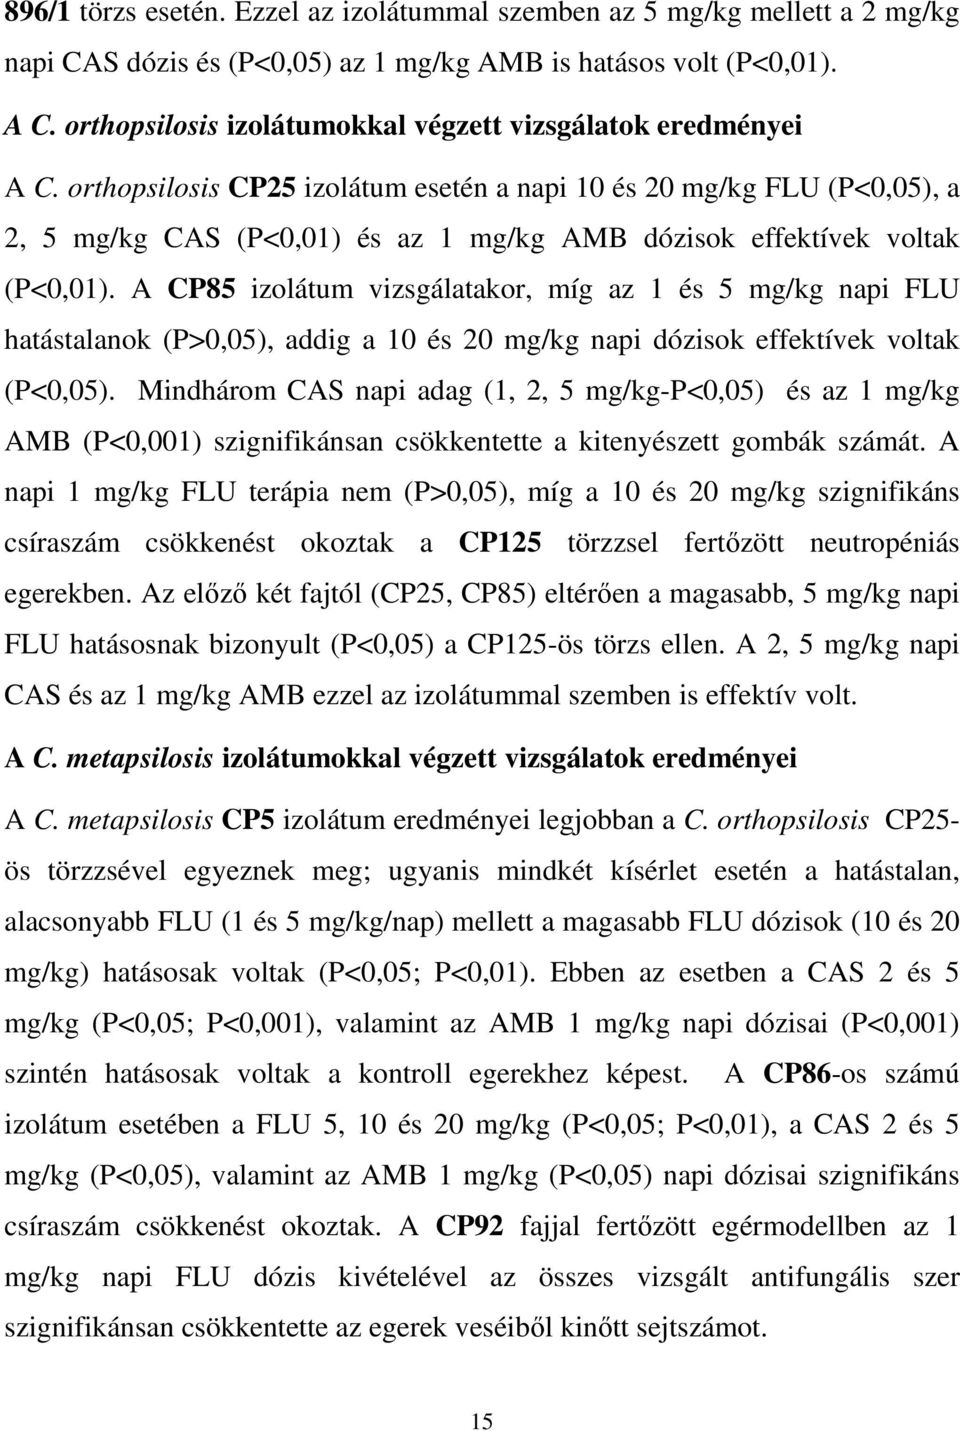 orthopsilosis CP25 izolátum esetén a napi 10 és 20 mg/kg FLU (P<0,05), a 2, 5 mg/kg CAS (P<0,01) és az 1 mg/kg AMB dózisok effektívek voltak (P<0,01).